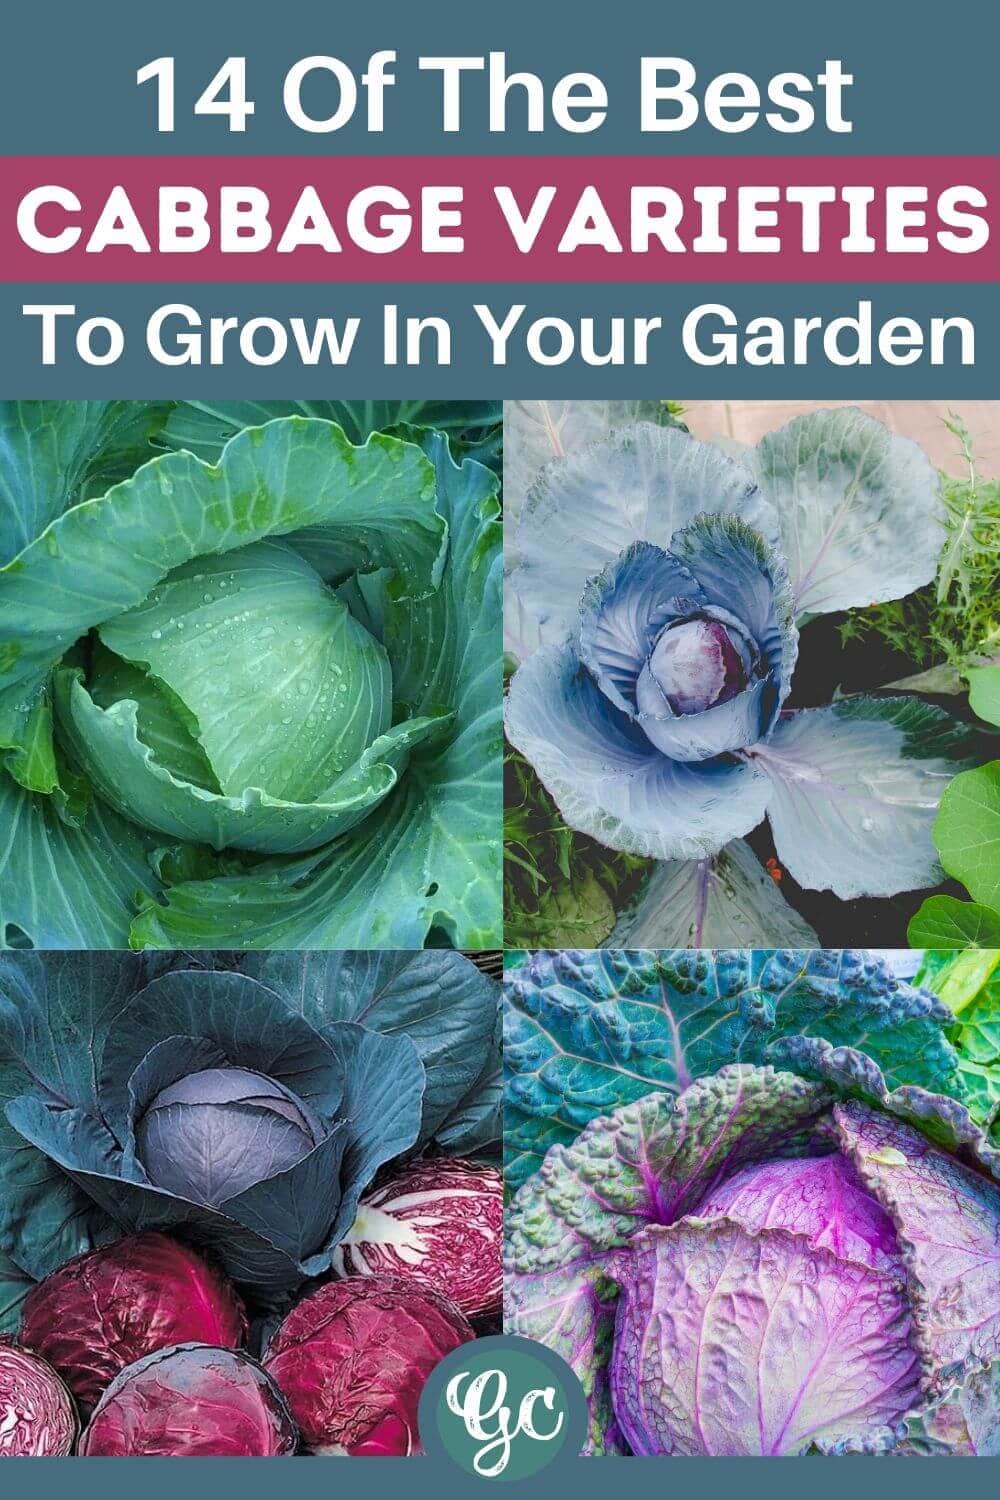  သင့်ဥယျာဉ်တွင် စိုက်ပျိုးရန် အရသာရှိသော ဂေါ်ဖီထုပ်မျိုးကွဲ အမျိုးပေါင်း ၁၄ မျိုး